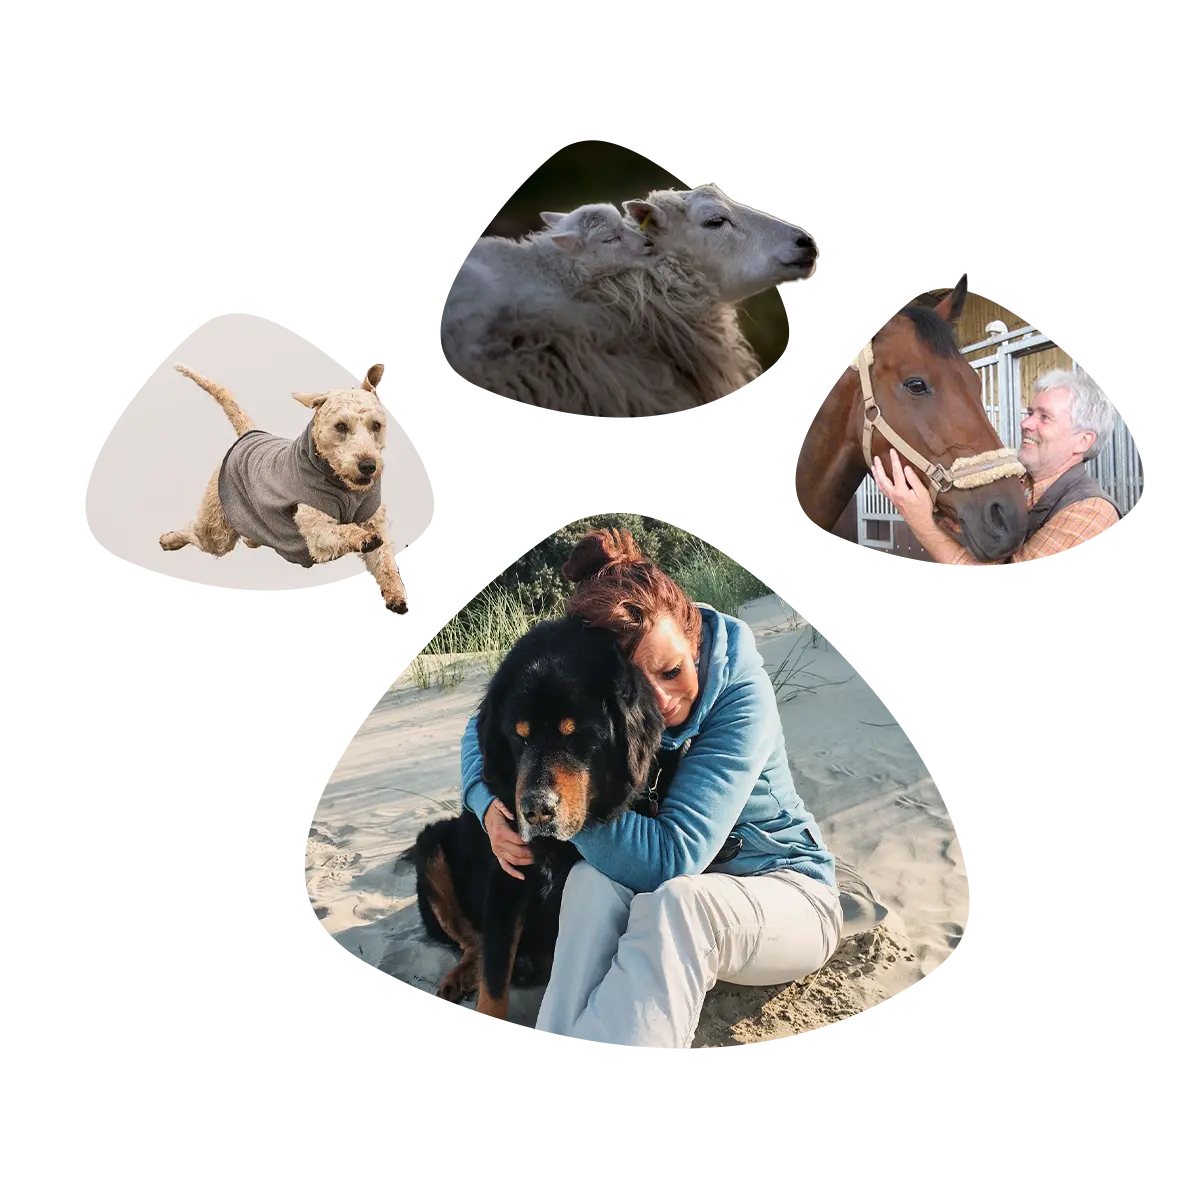 Bildkollage aus 4 Bildelementen: Springender Hund, Schaf mit Lämmchen, Pferd und Tierarzt, Frau einen Hund umarmend